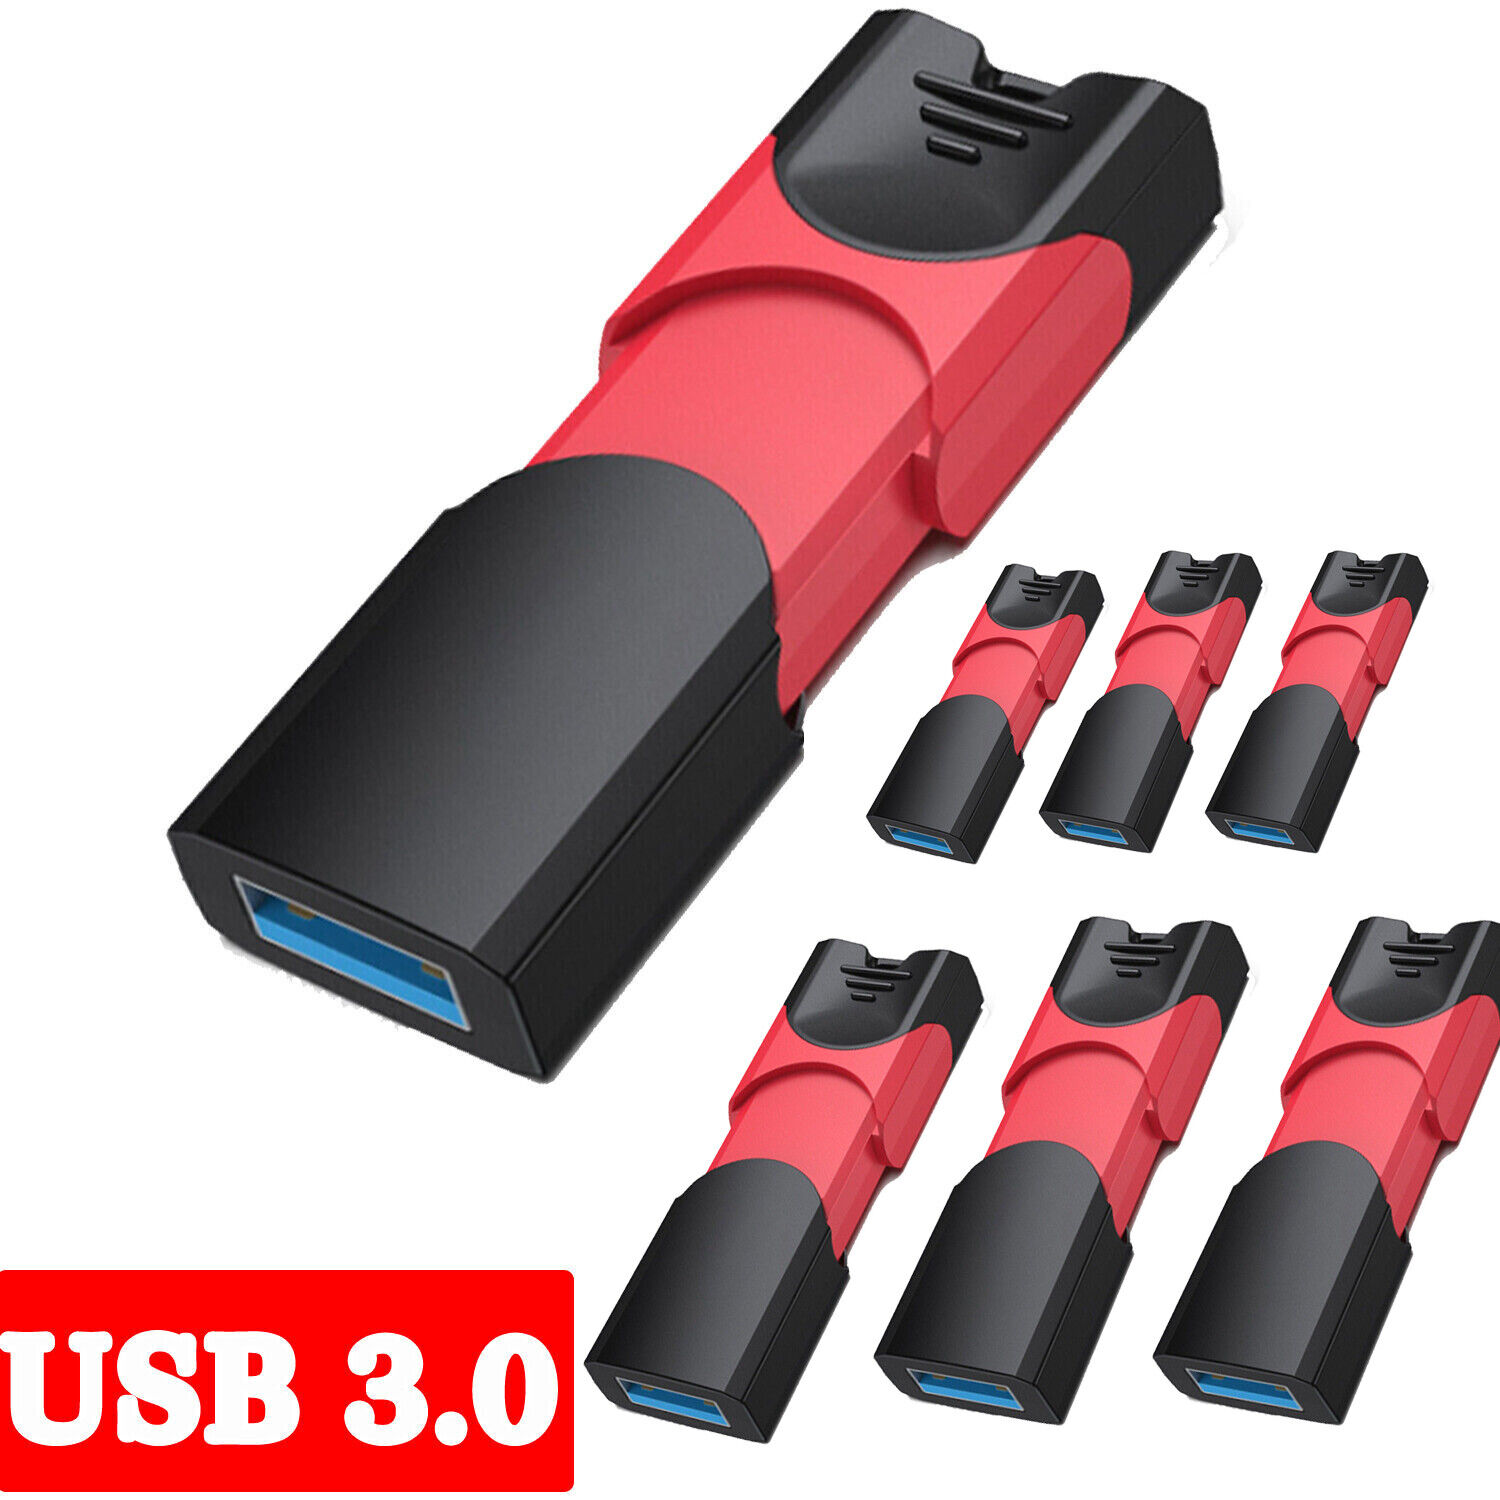 1/5Pack USB3.0 32GB Flash Drive Thumb Drive USB Stick Drive Data Storage Disk